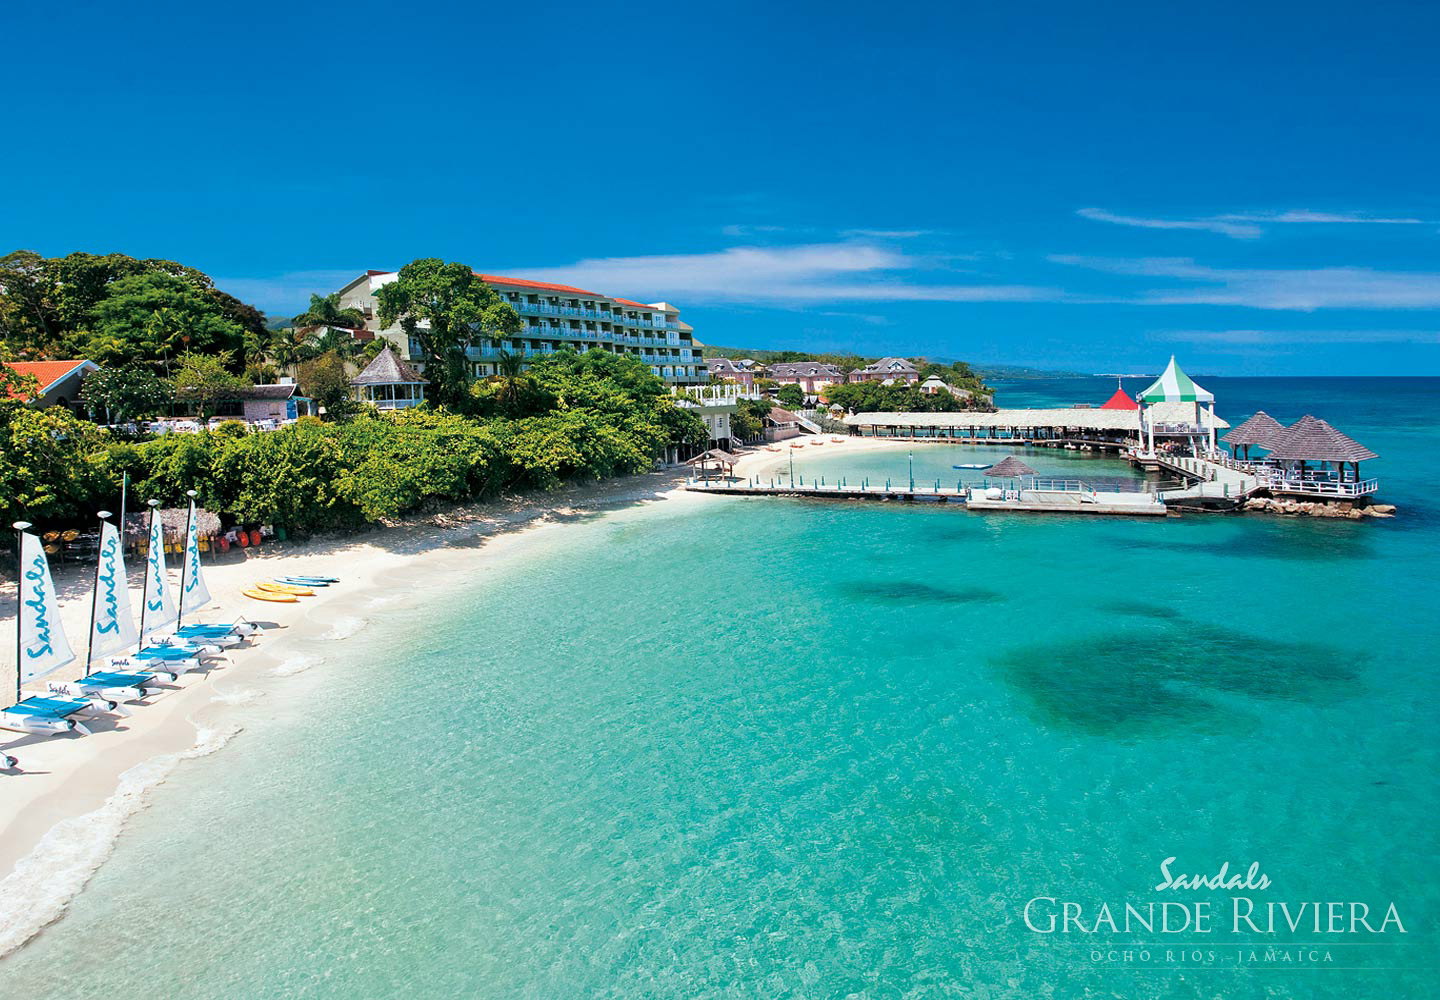 Sandals Grande Riviera Beach & Villa Golf Resort |Ocho Rios, Jamaica